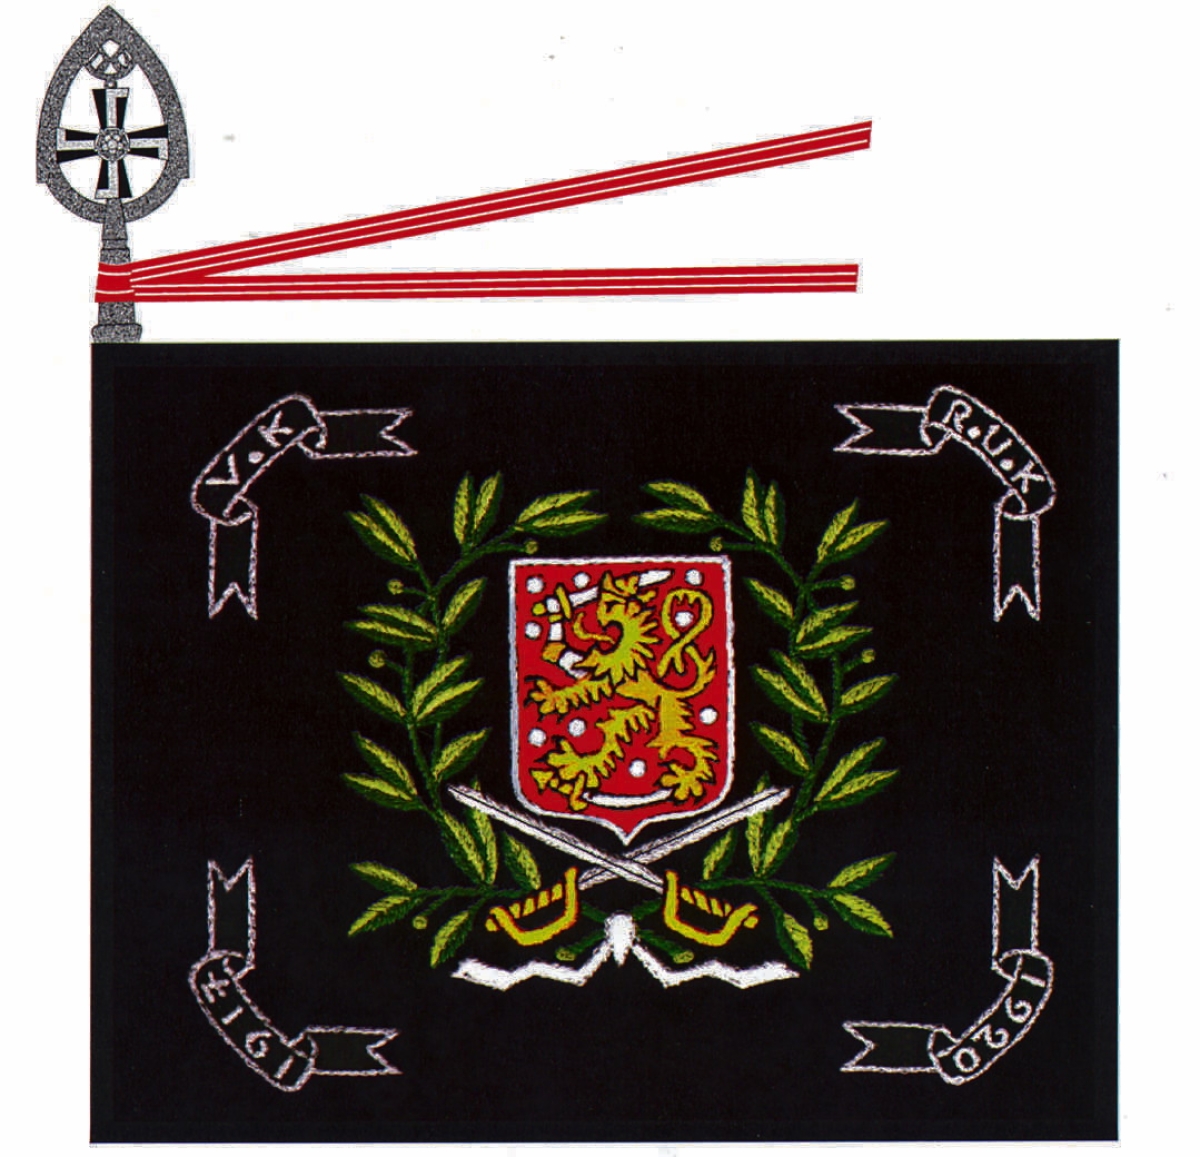 Vimpelin sotakoulu oli ensimmäisen sotilasopetuslaitoksen, nykyisen Reserviupseerikoulun, RUK:n edeltäjä. Kuvassa VImpelin sotakoulun lippu.